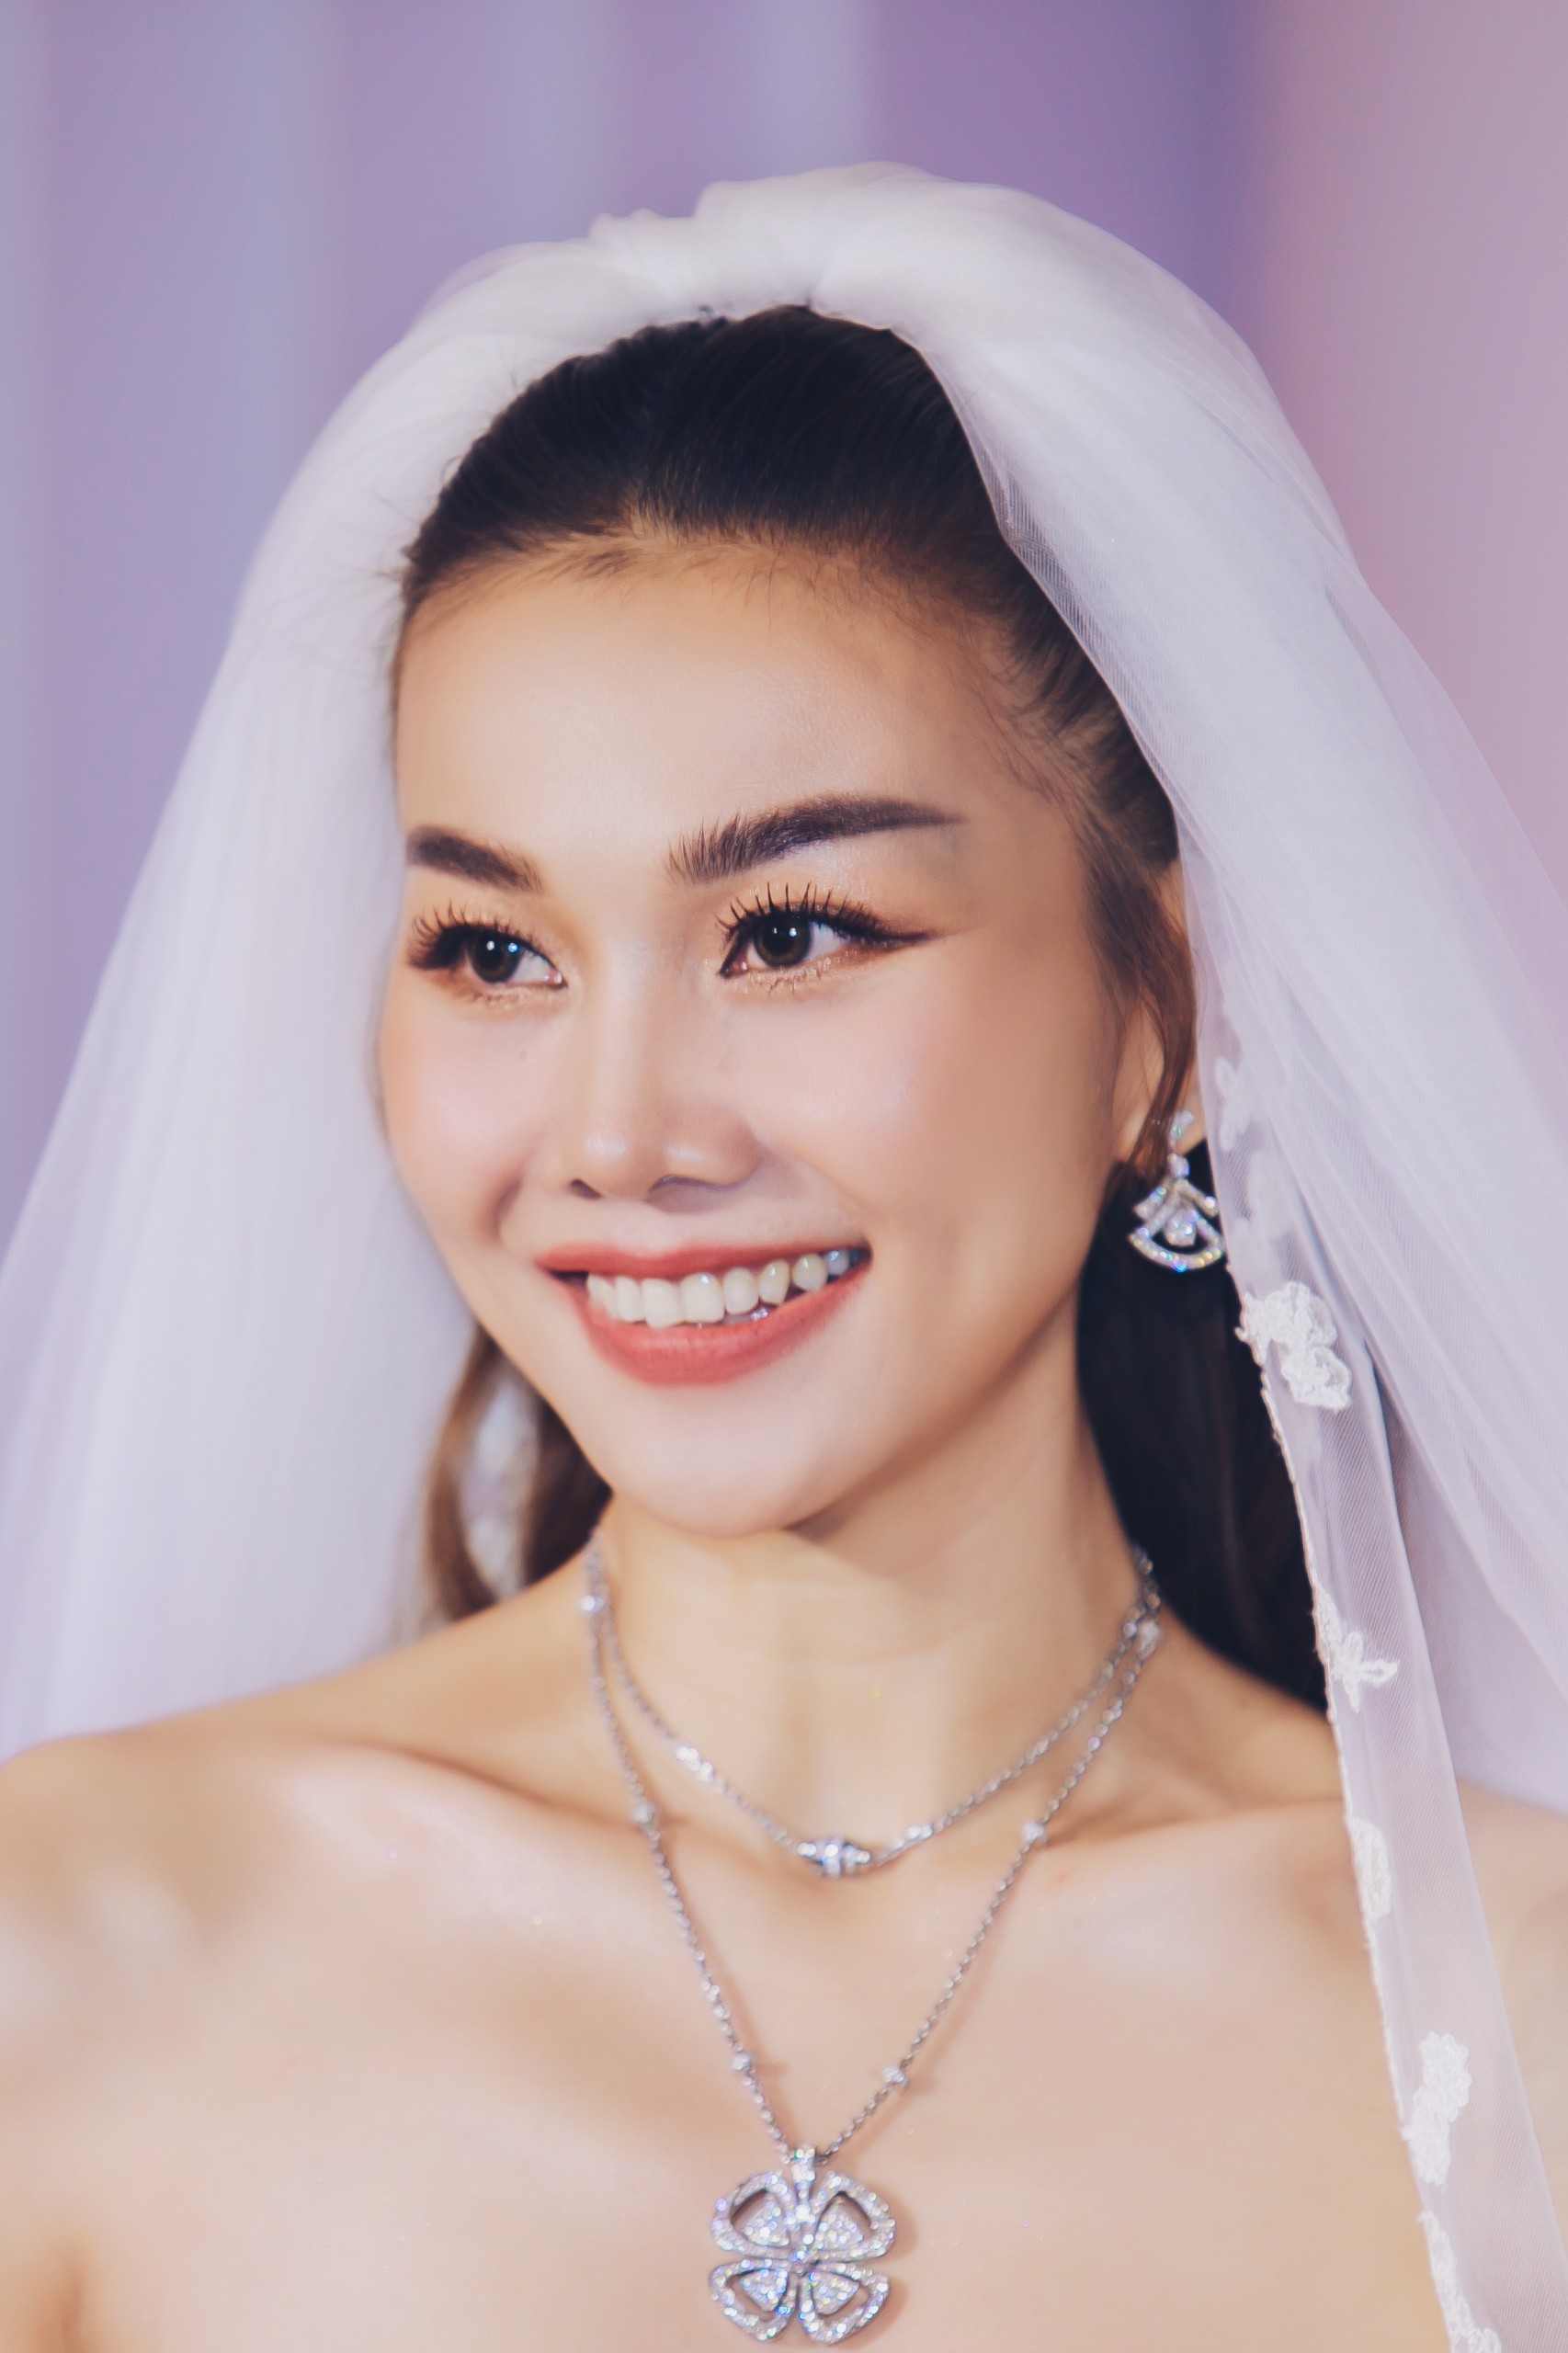 Siêu mẫu Thanh Hằng đeo trang sức hơn 10 tỉ đồng trong đám cưới - Ảnh 4.